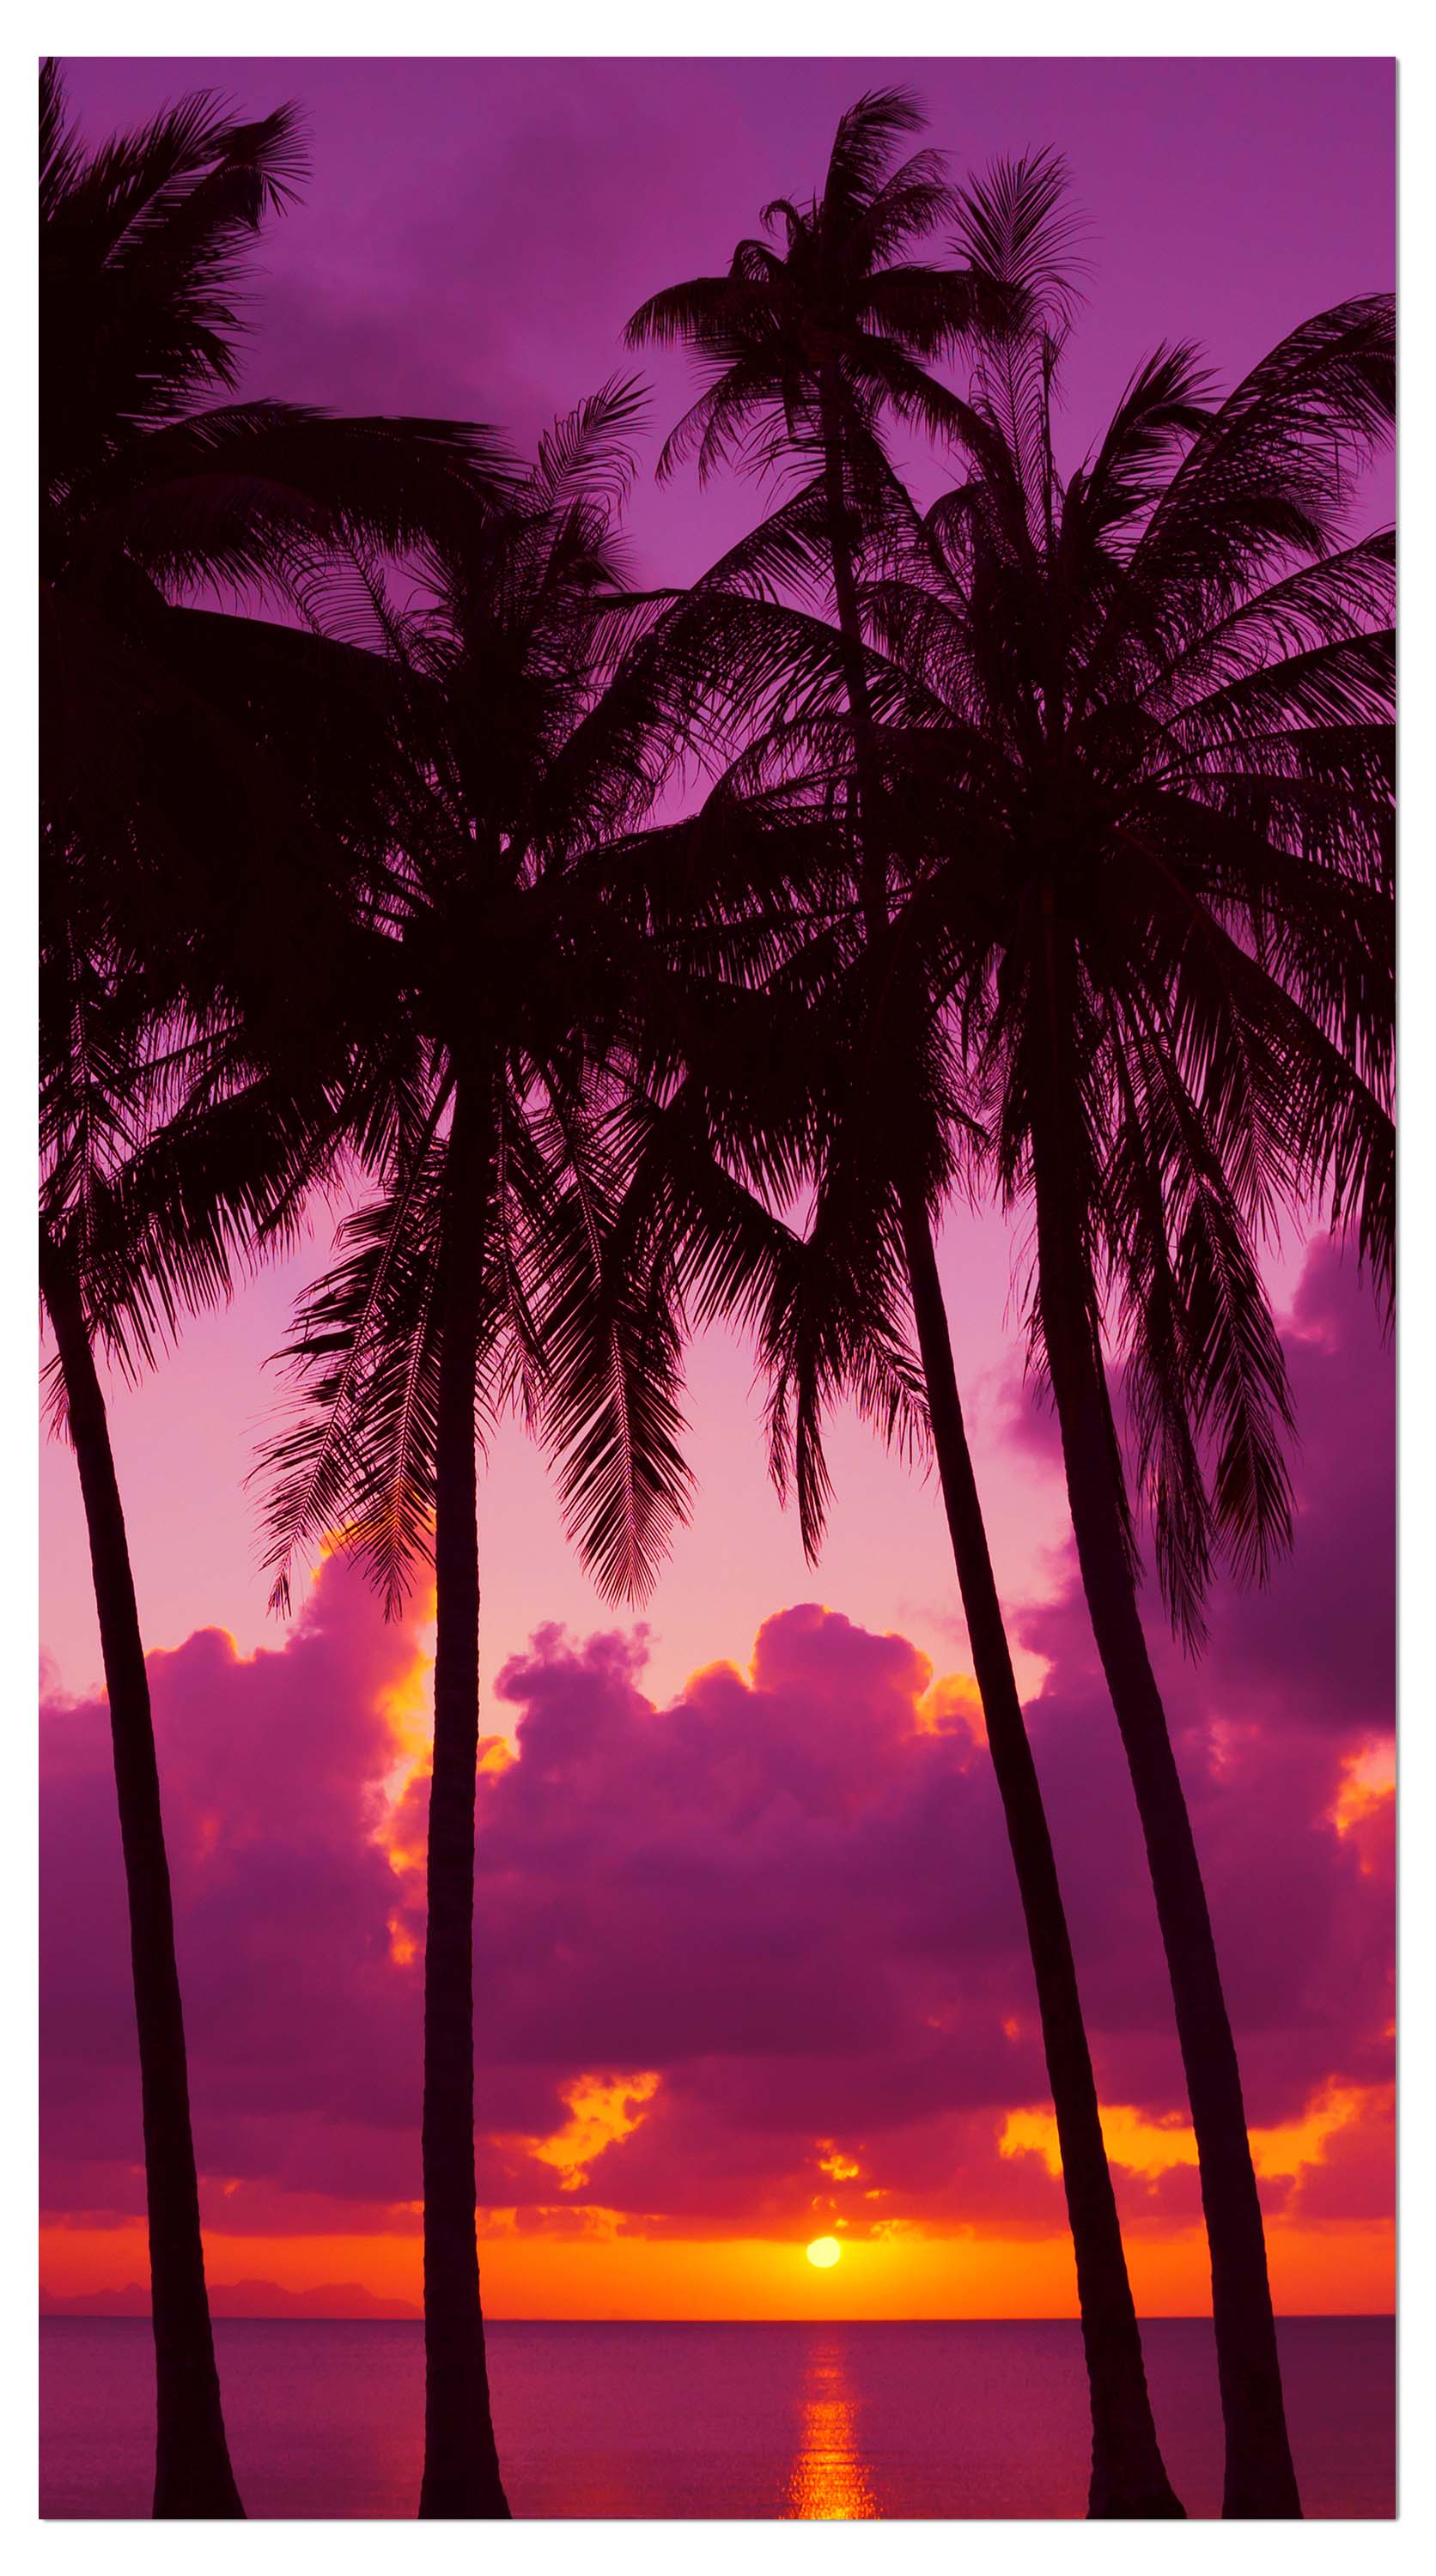 Garderobe Palmen Silhouette bei Sonnenuntergang. Thailand M0889 entdecken - Bild 4